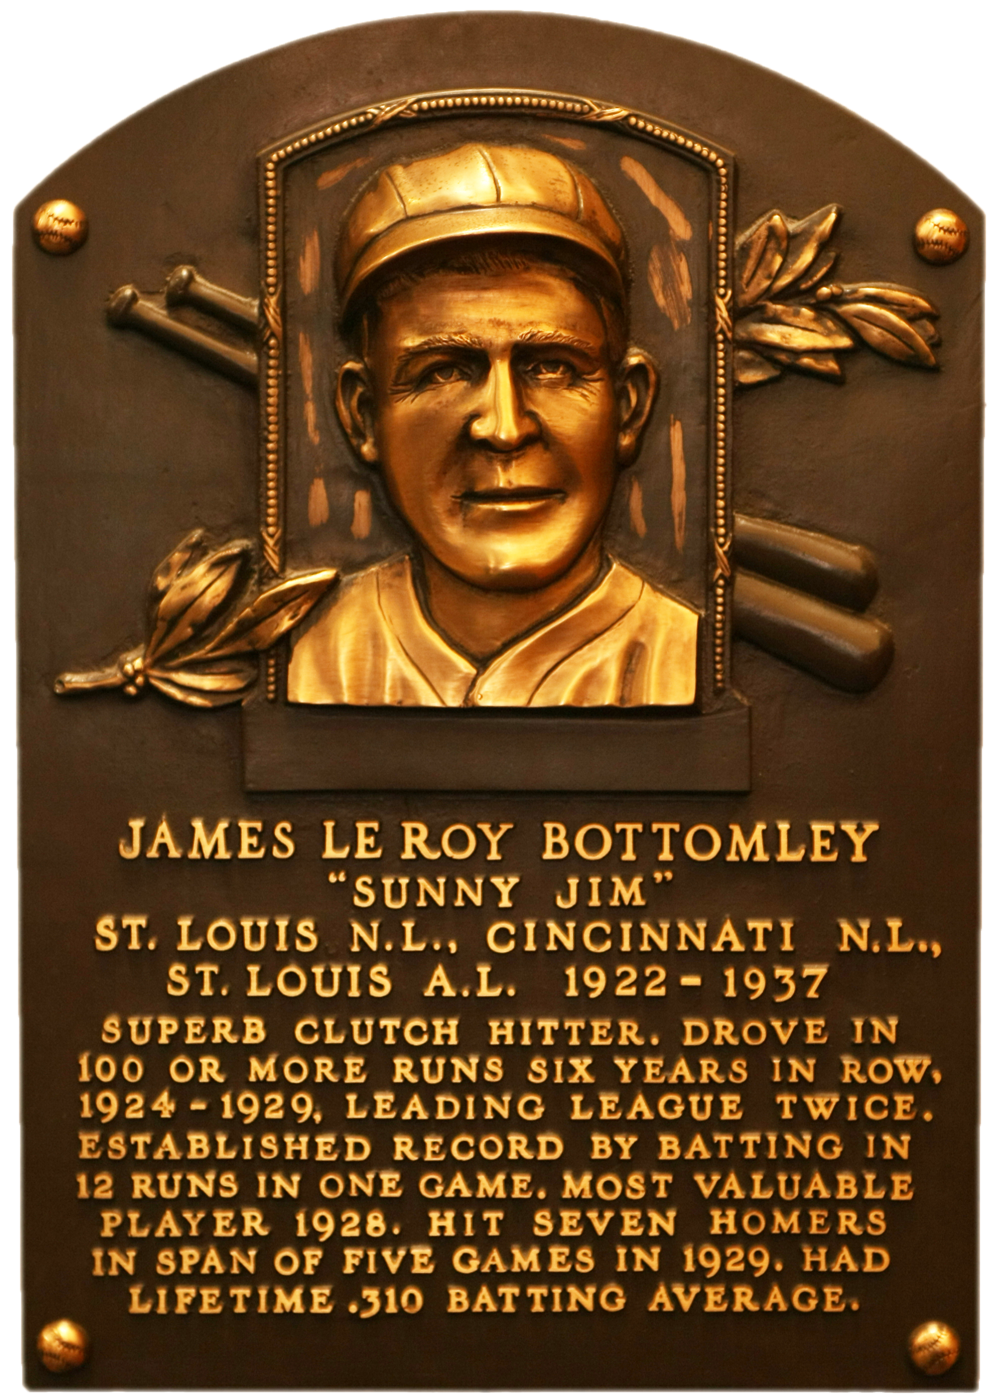 Jim Bottomley Hall of Fame plaque